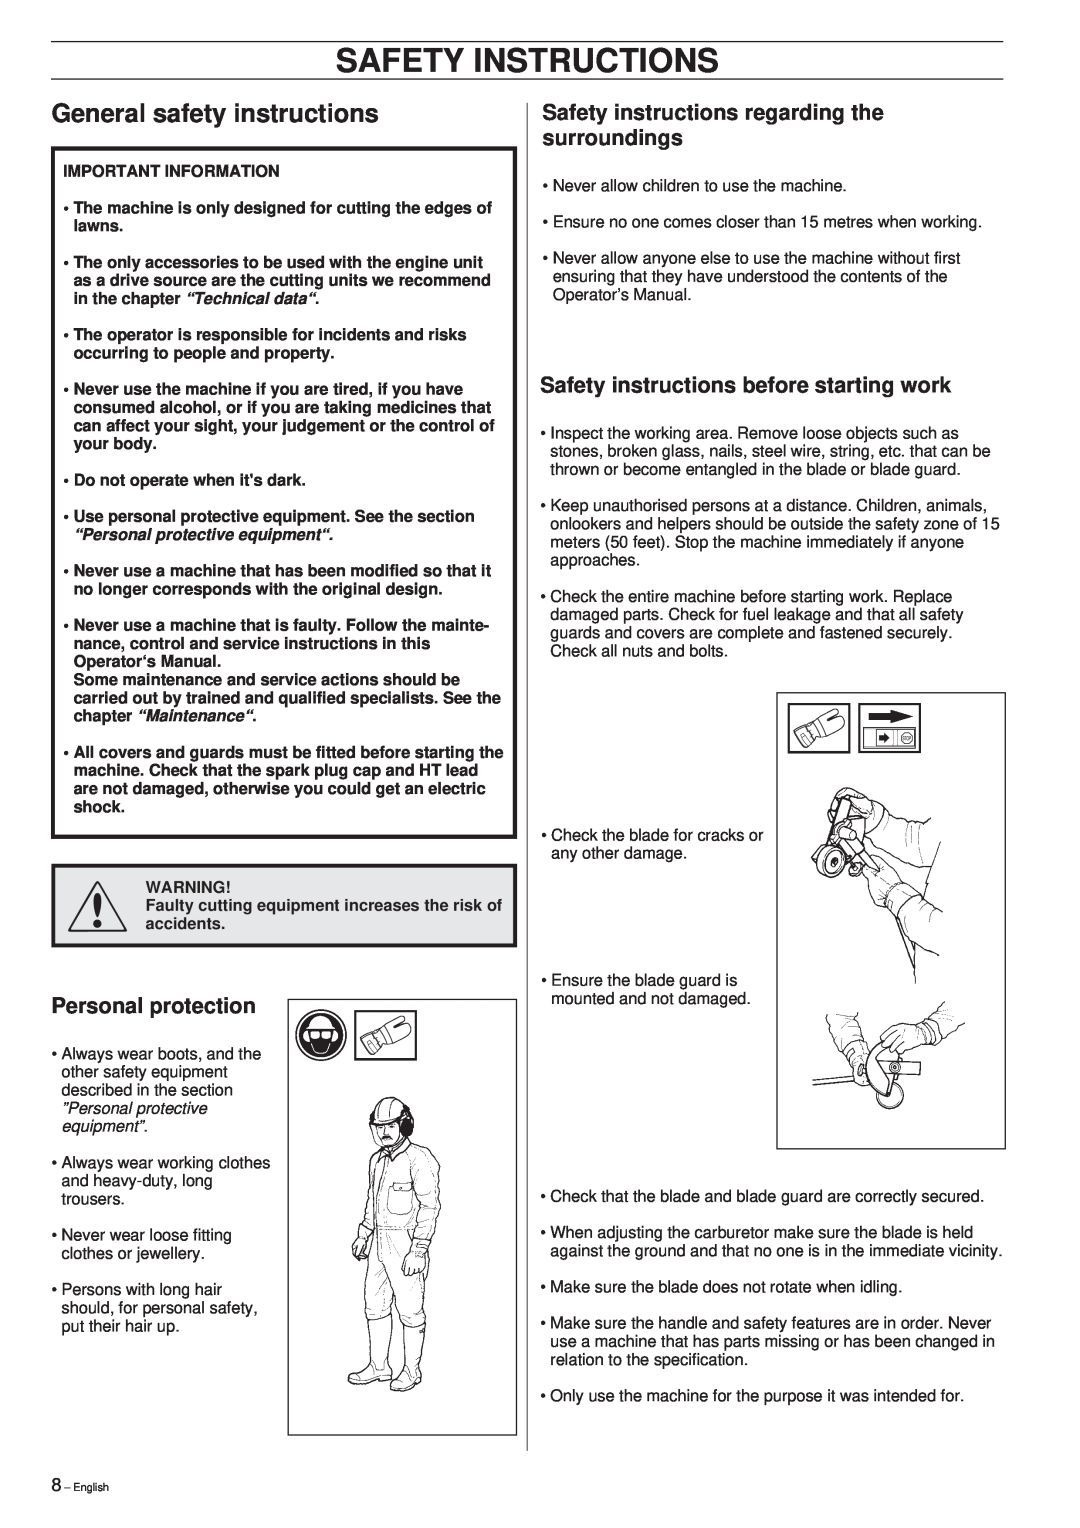 Husqvarna 326EX manual General safety instructions, Safety Instructions, Personal protection 